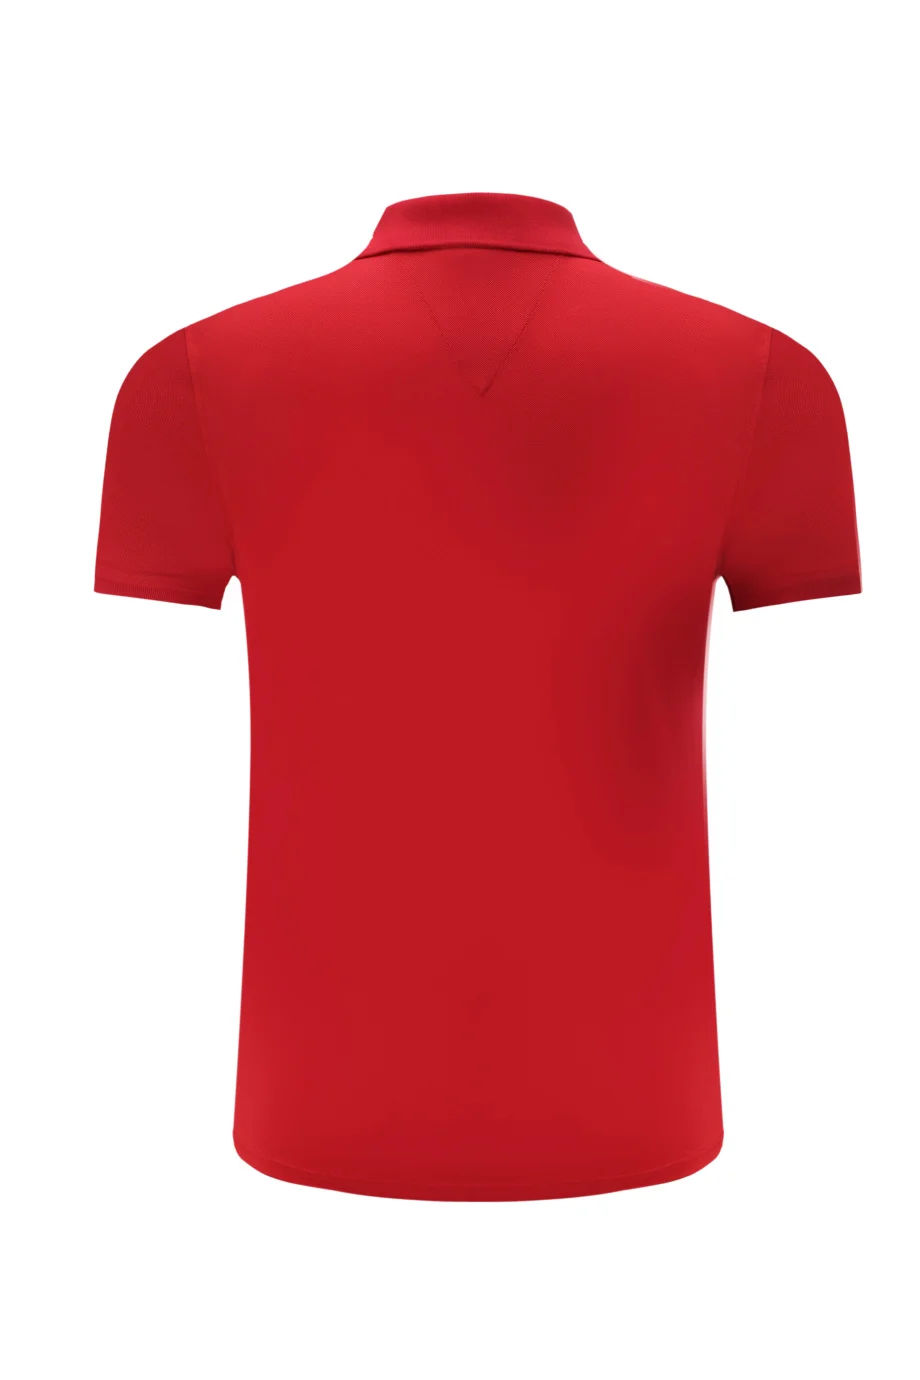 Мужская рубашка для гольфа с коротким рукавом с воротником-стойкой ropa de golf para hombre Спортивная футболка для бега быстросохнущая теннисная футболка